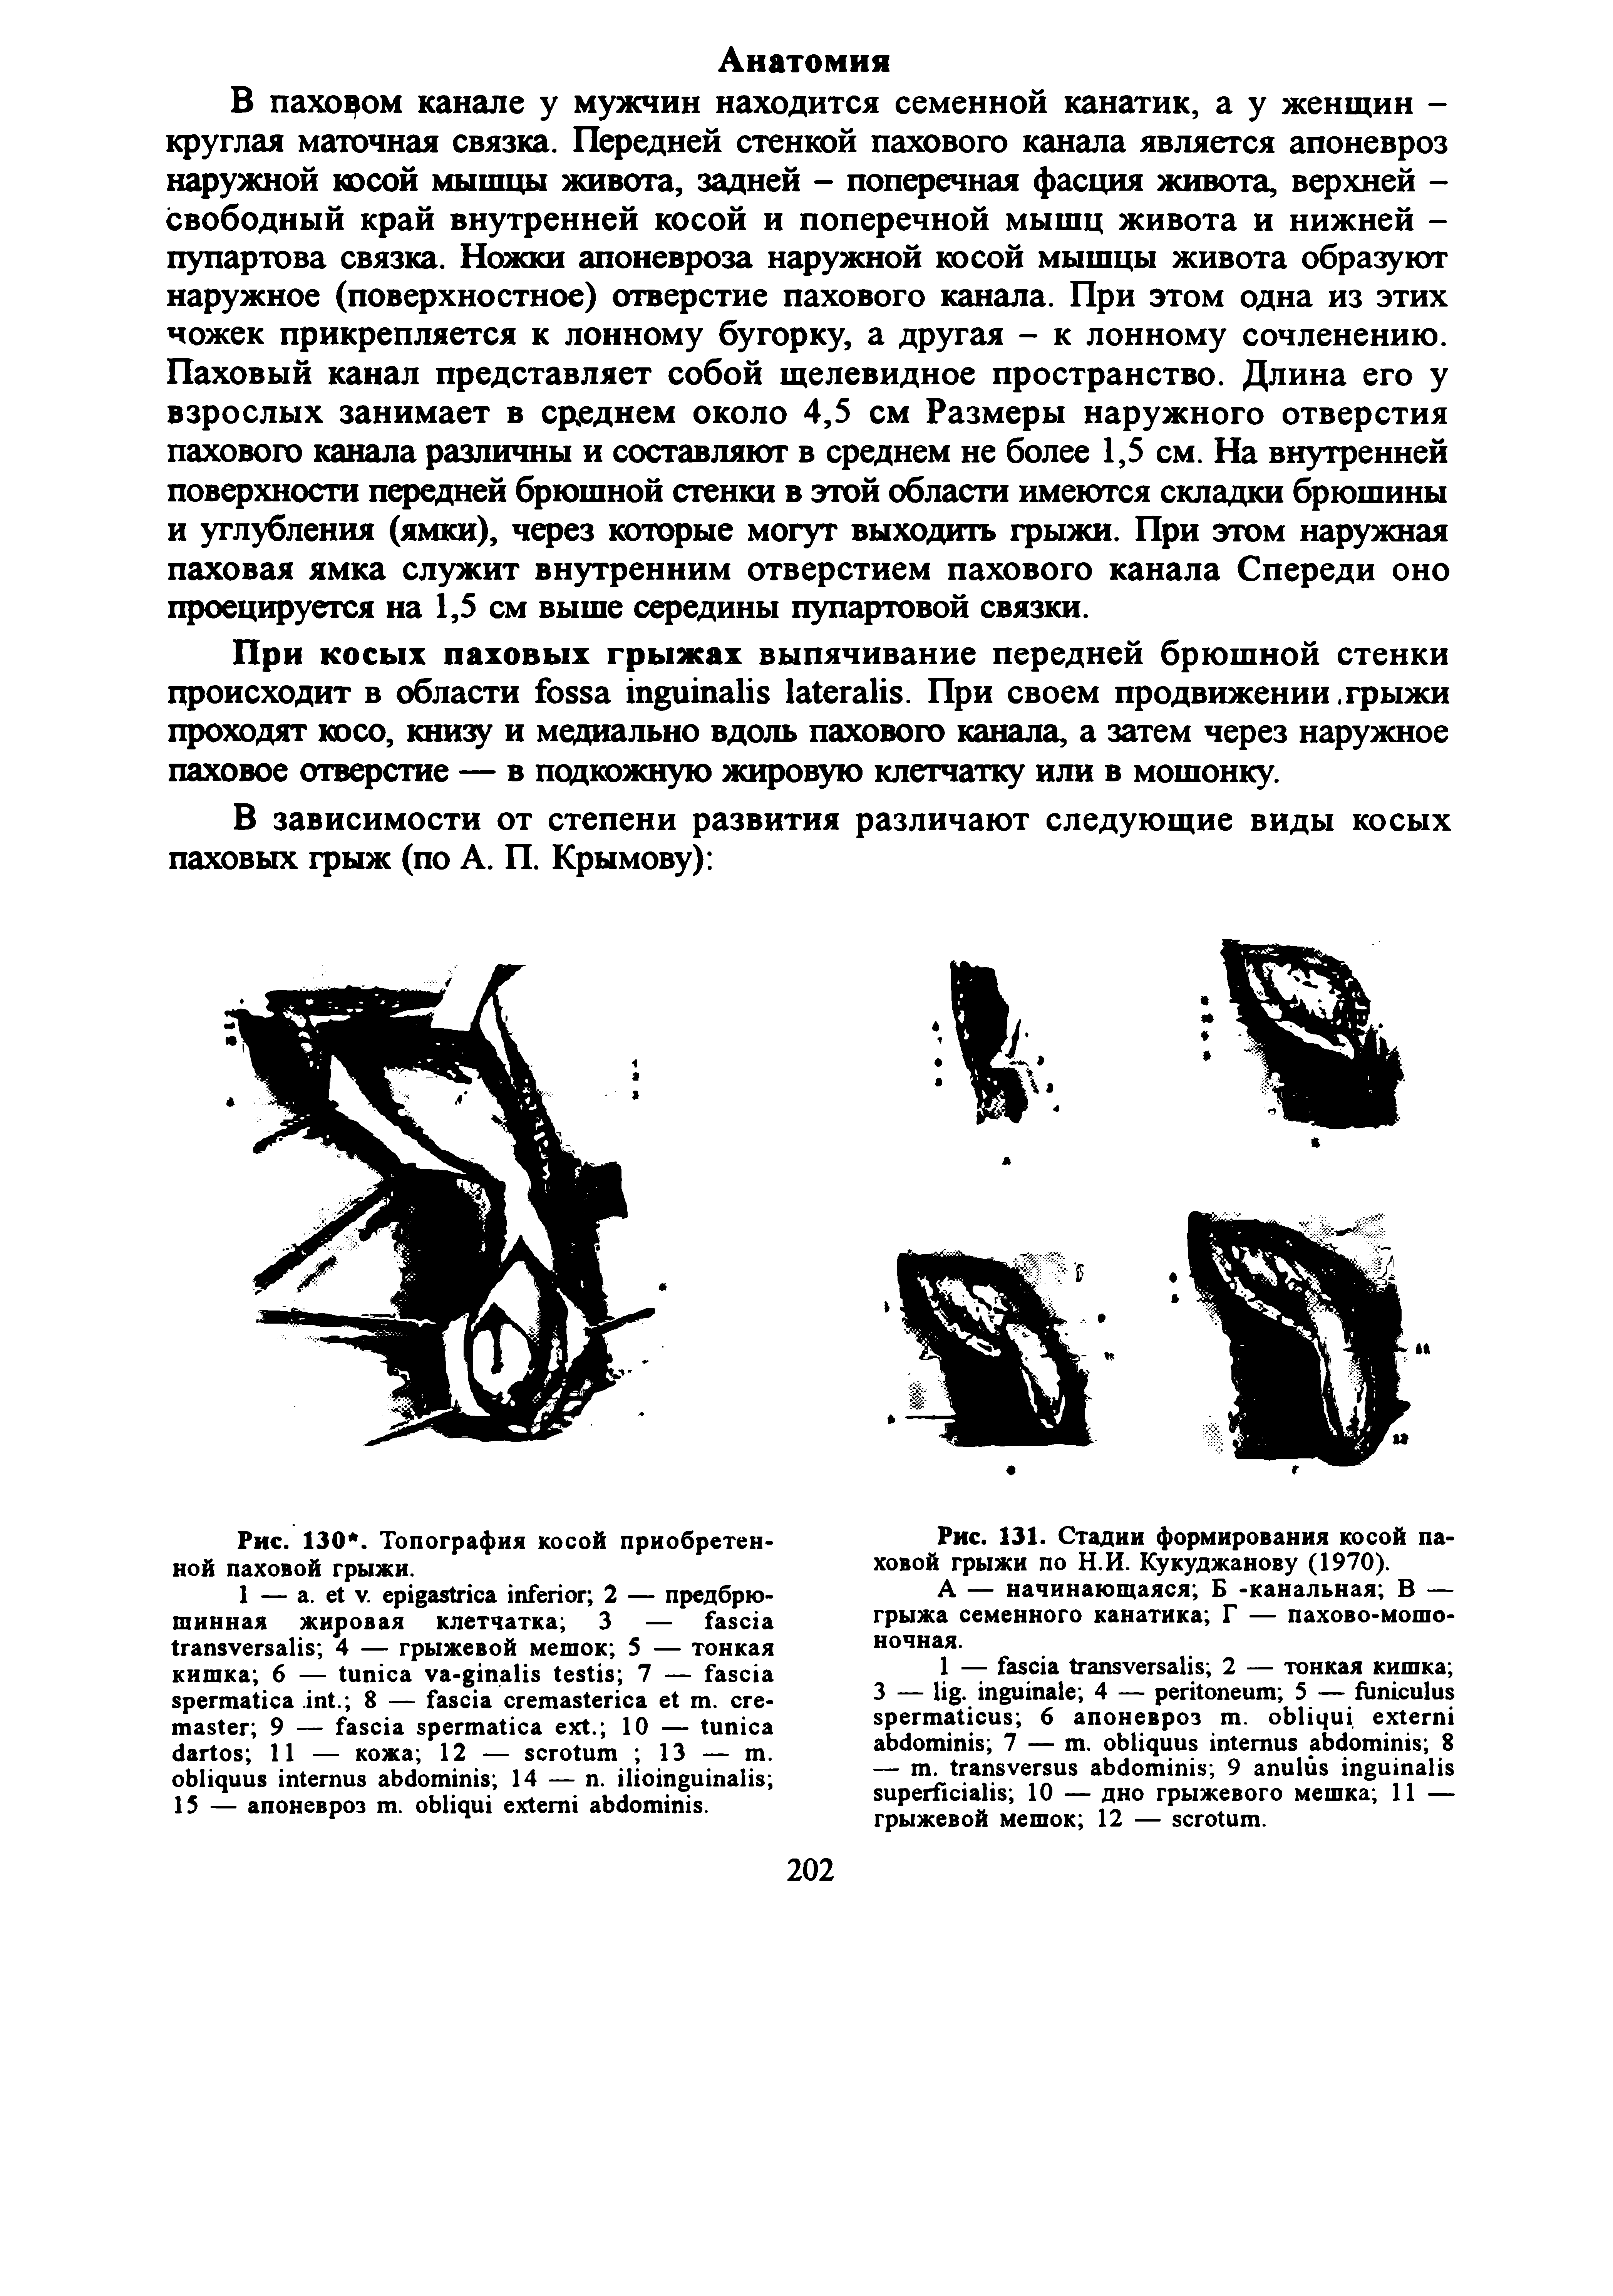 Рис. 131. Стадии формирования косой паховой грыжи по Н.И. Кукуджанову (1970).